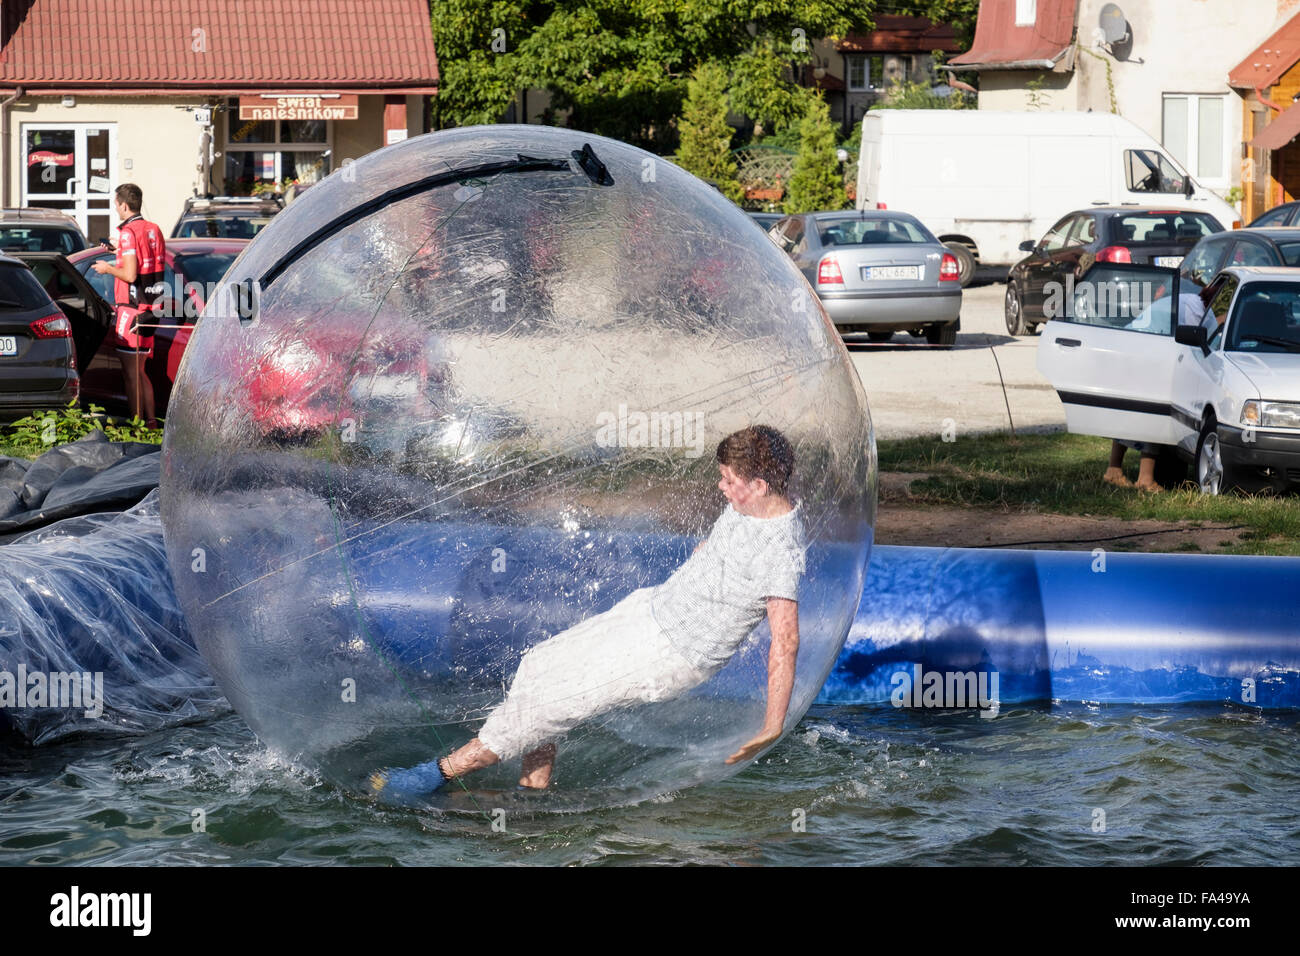 Junge mit Spaß in einer aufblasbaren Zorb-Ball-Blase auf einen Pool von  Wasser nach hinten fallen. Polanica-Zdrój, Glatz, Polen, Europa  Stockfotografie - Alamy